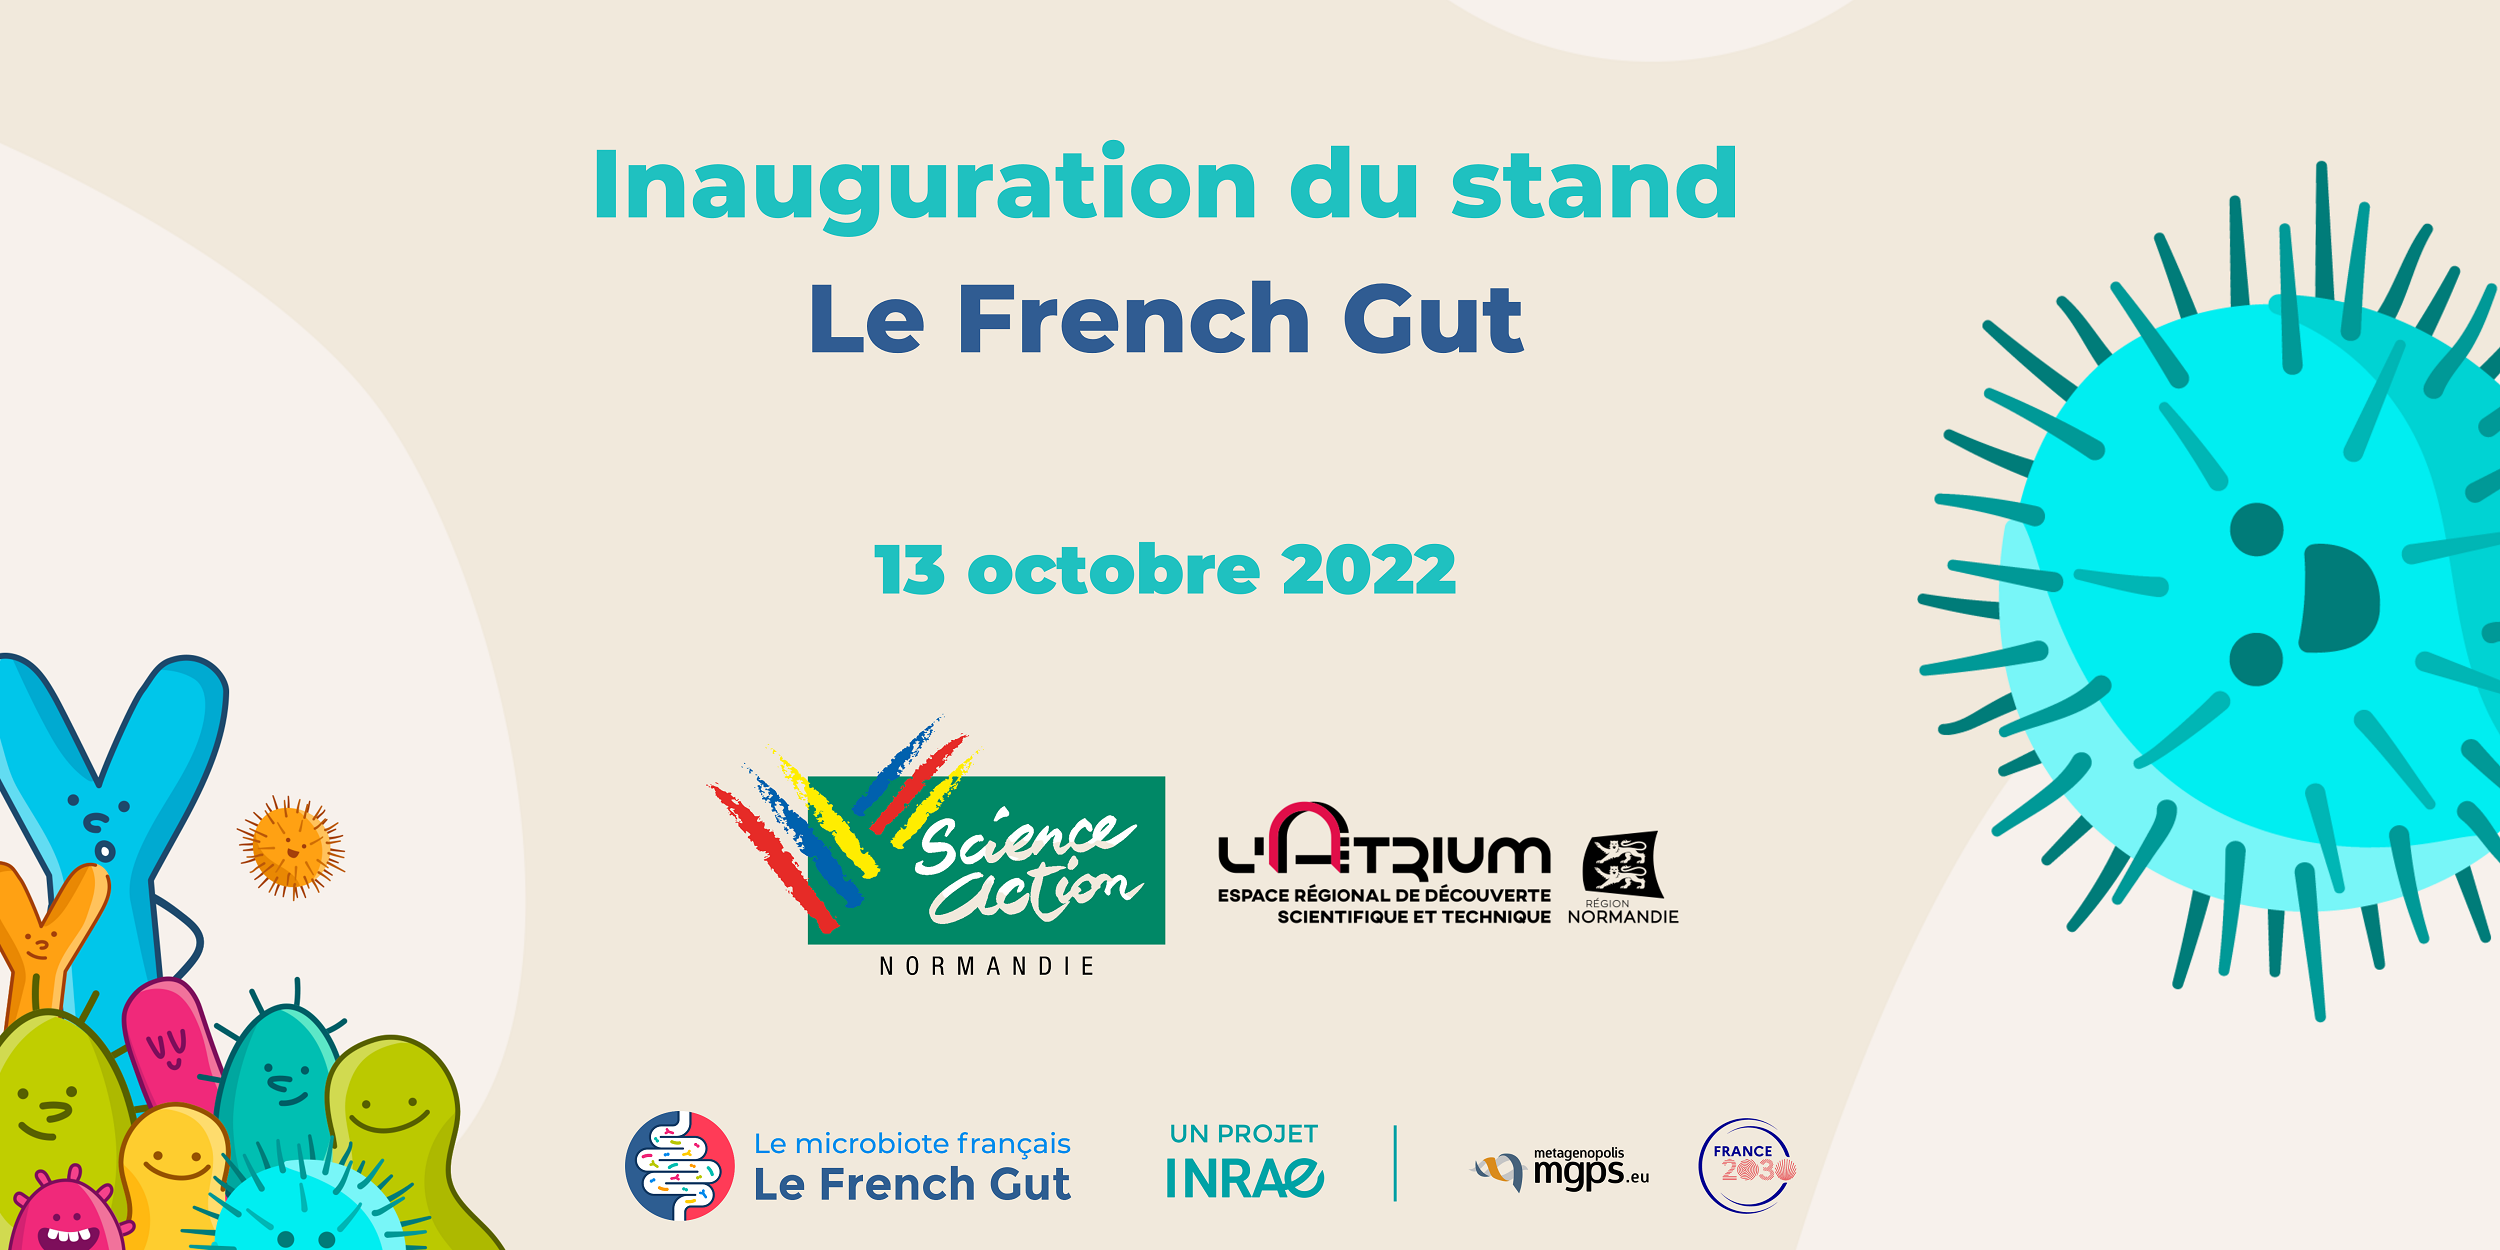 Inauguration du stand Le French Gut à l’Atrium de Rouen le 13 octobre 2022 !